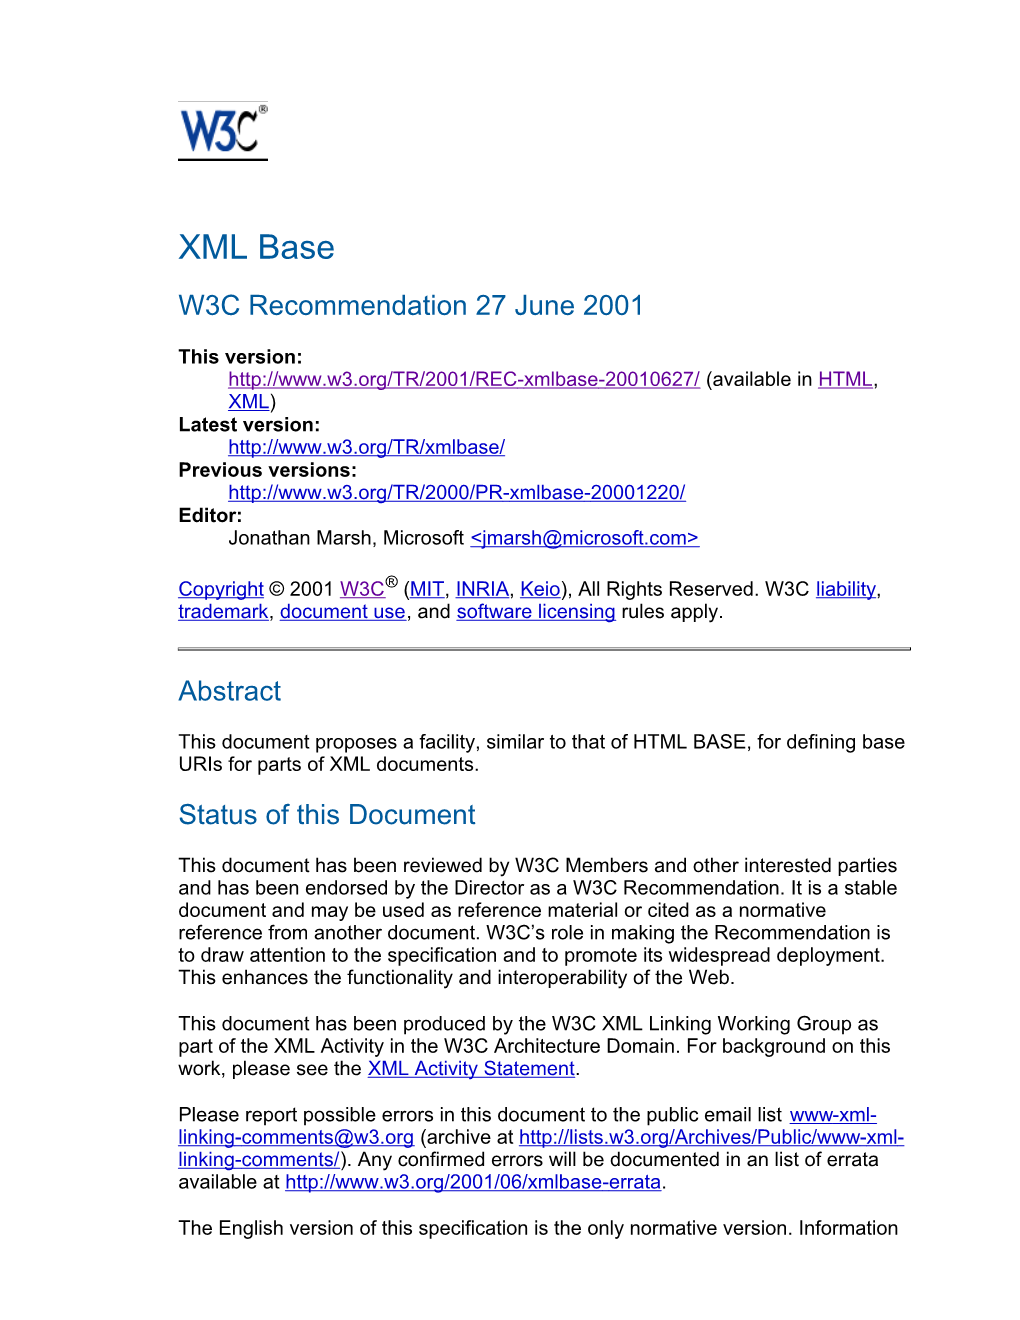 XML Base W3C Recommendation 27 June 2001